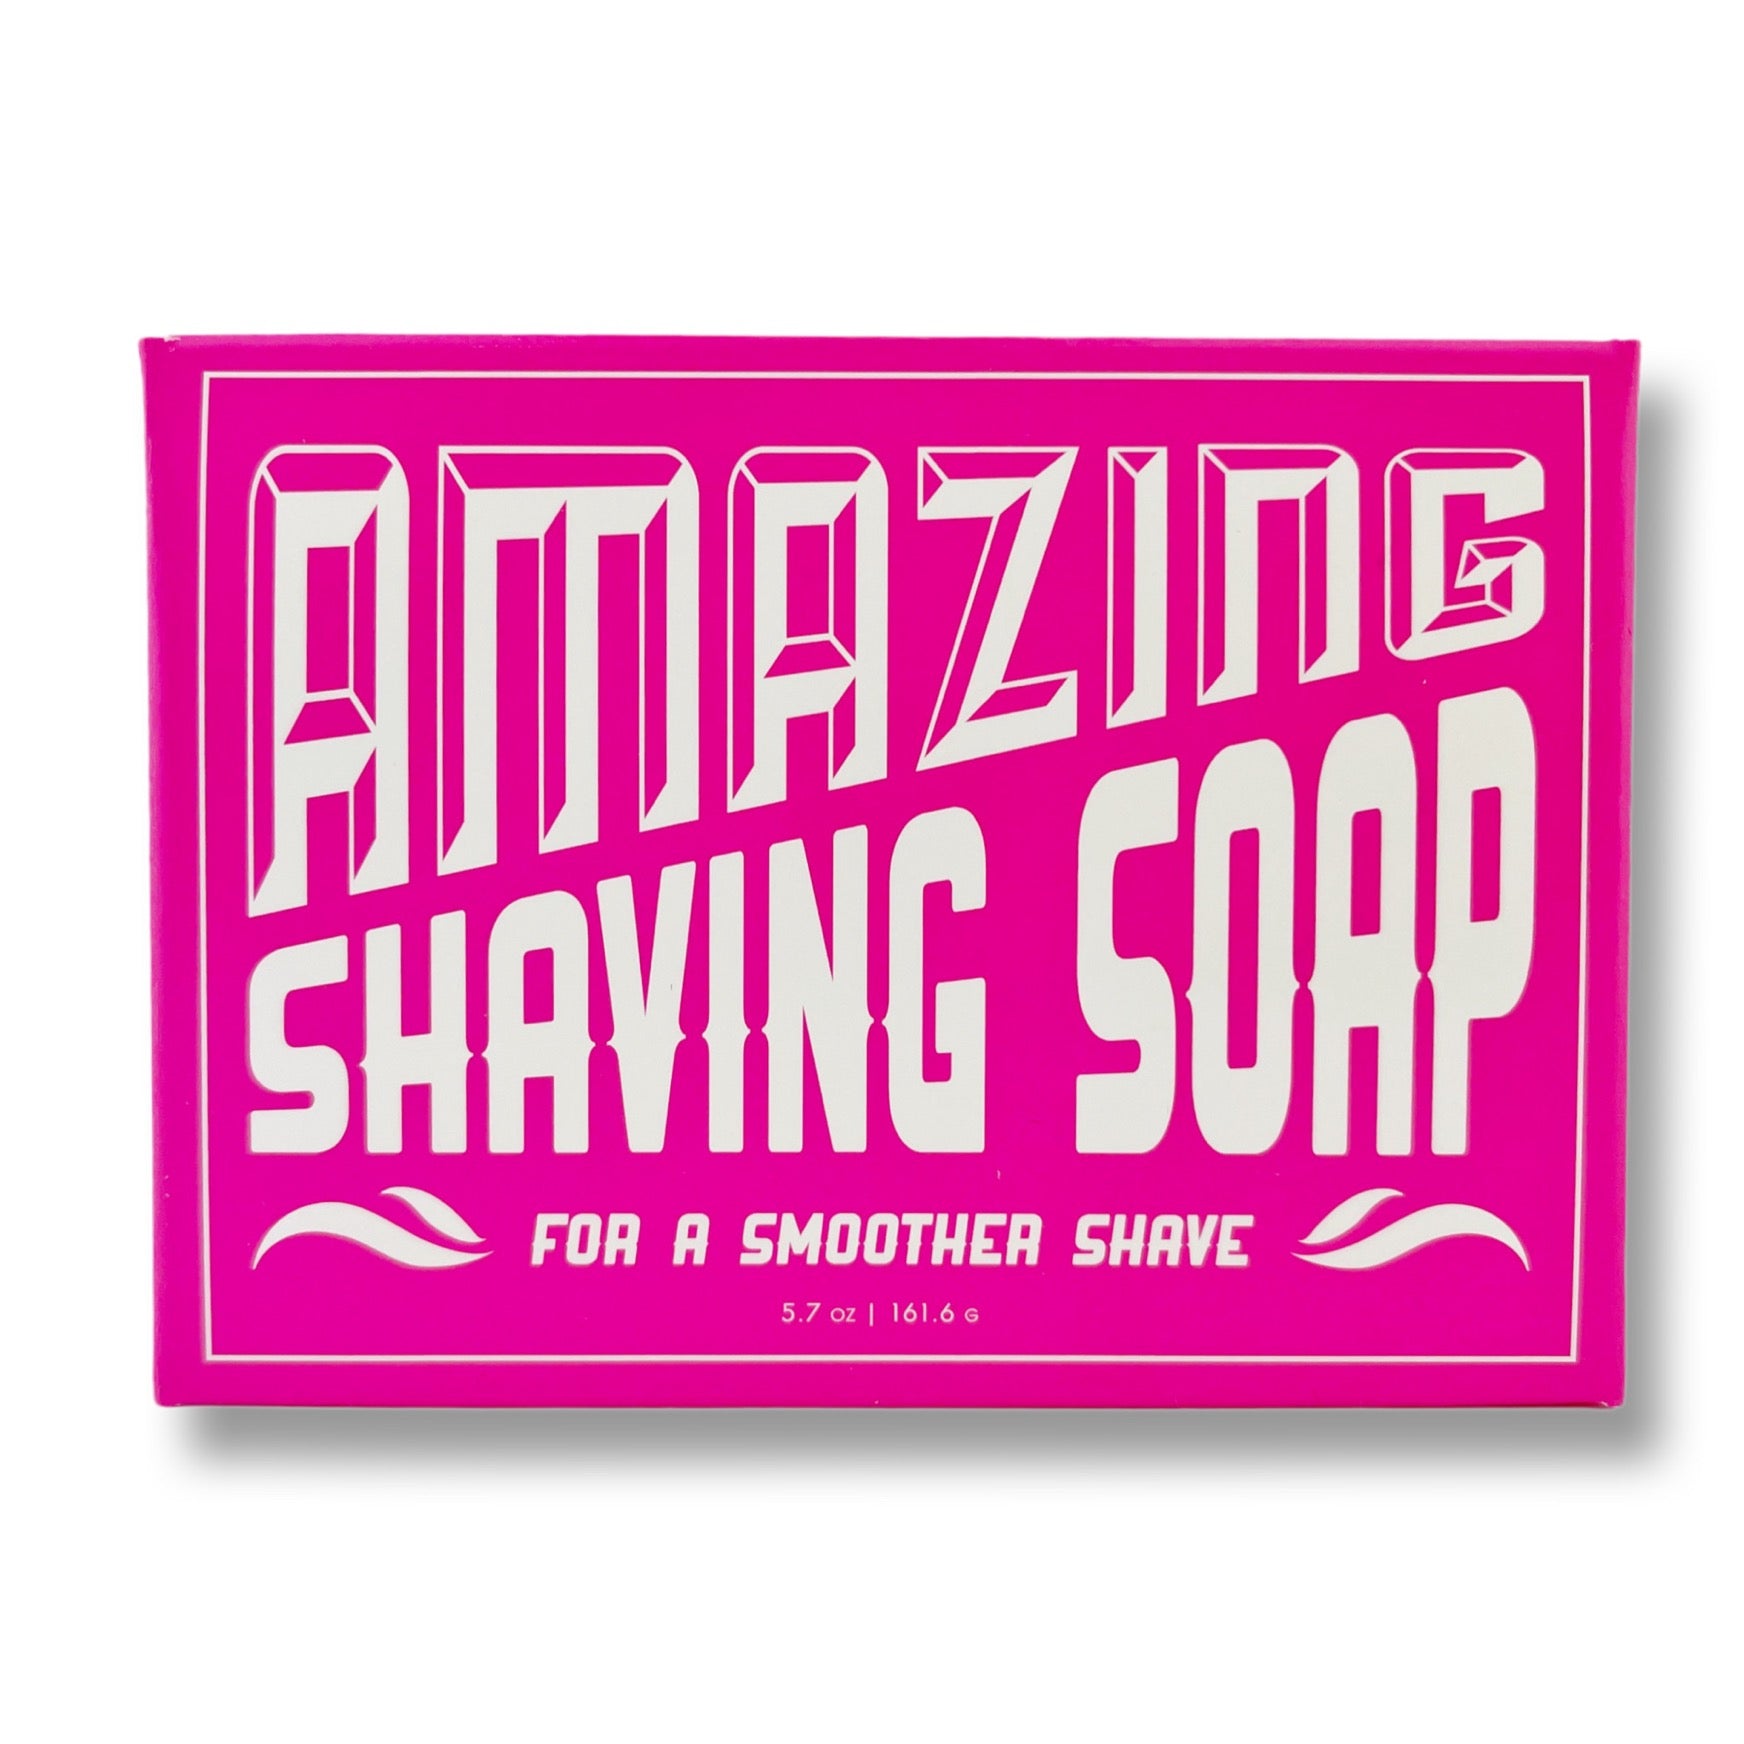 Amazing Shaving Soap For Women